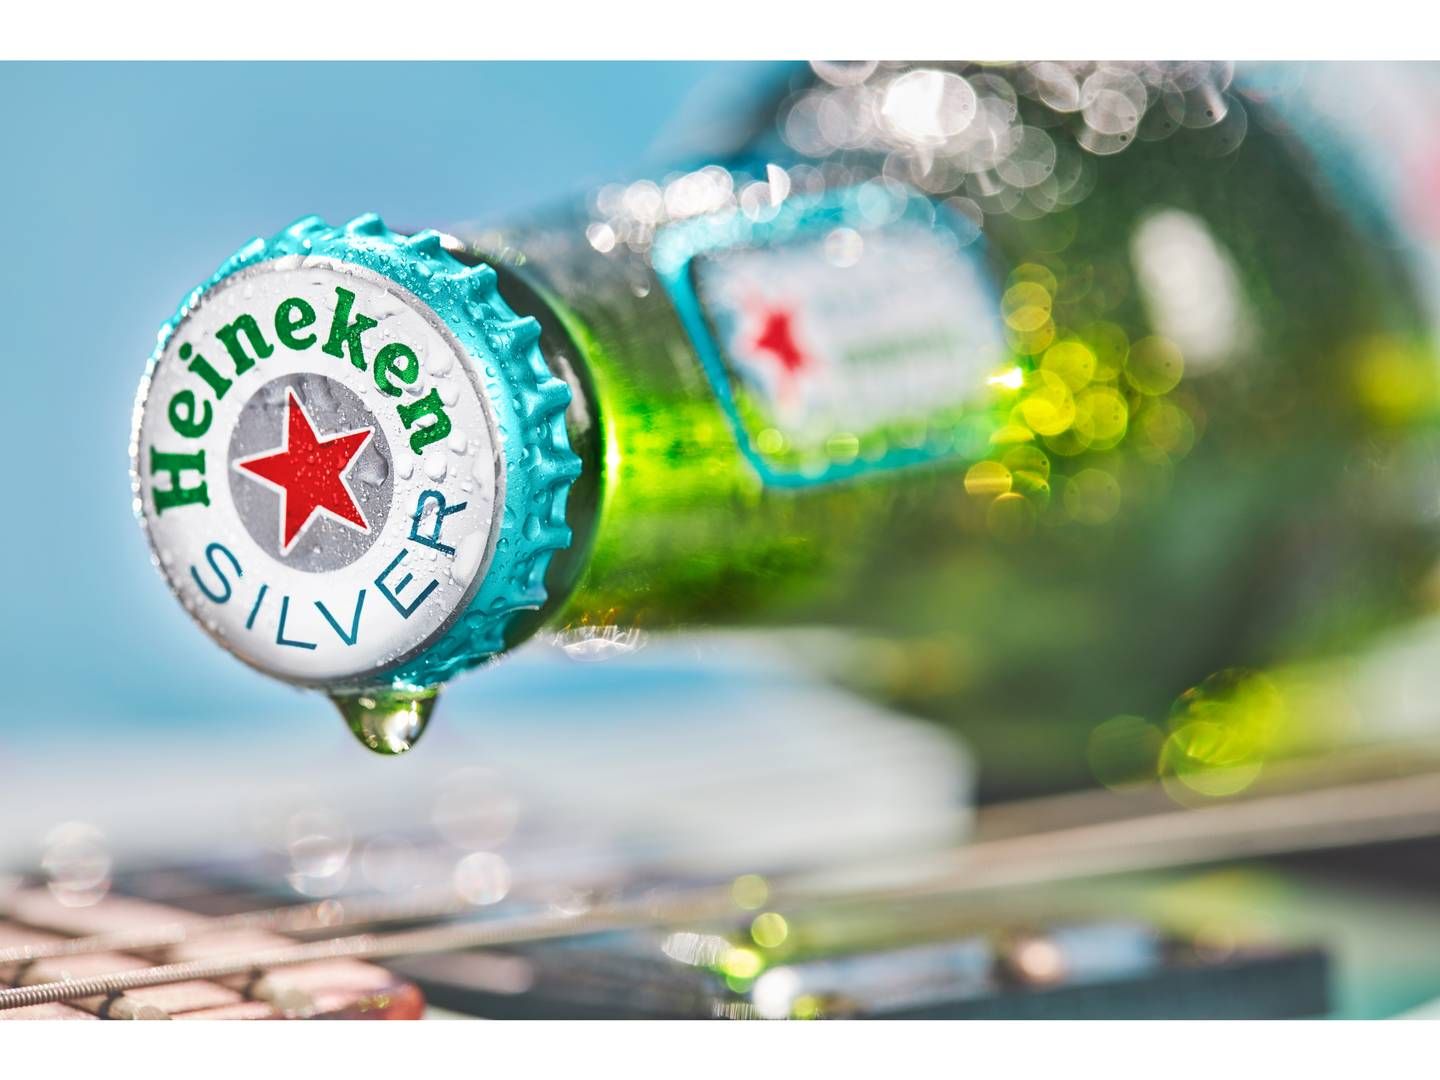 Heineken møder stor kritik for fortsat tilstedeværelse i Rusland. | Foto: Paul Berends, Heineken, Royal Unibrew Pr